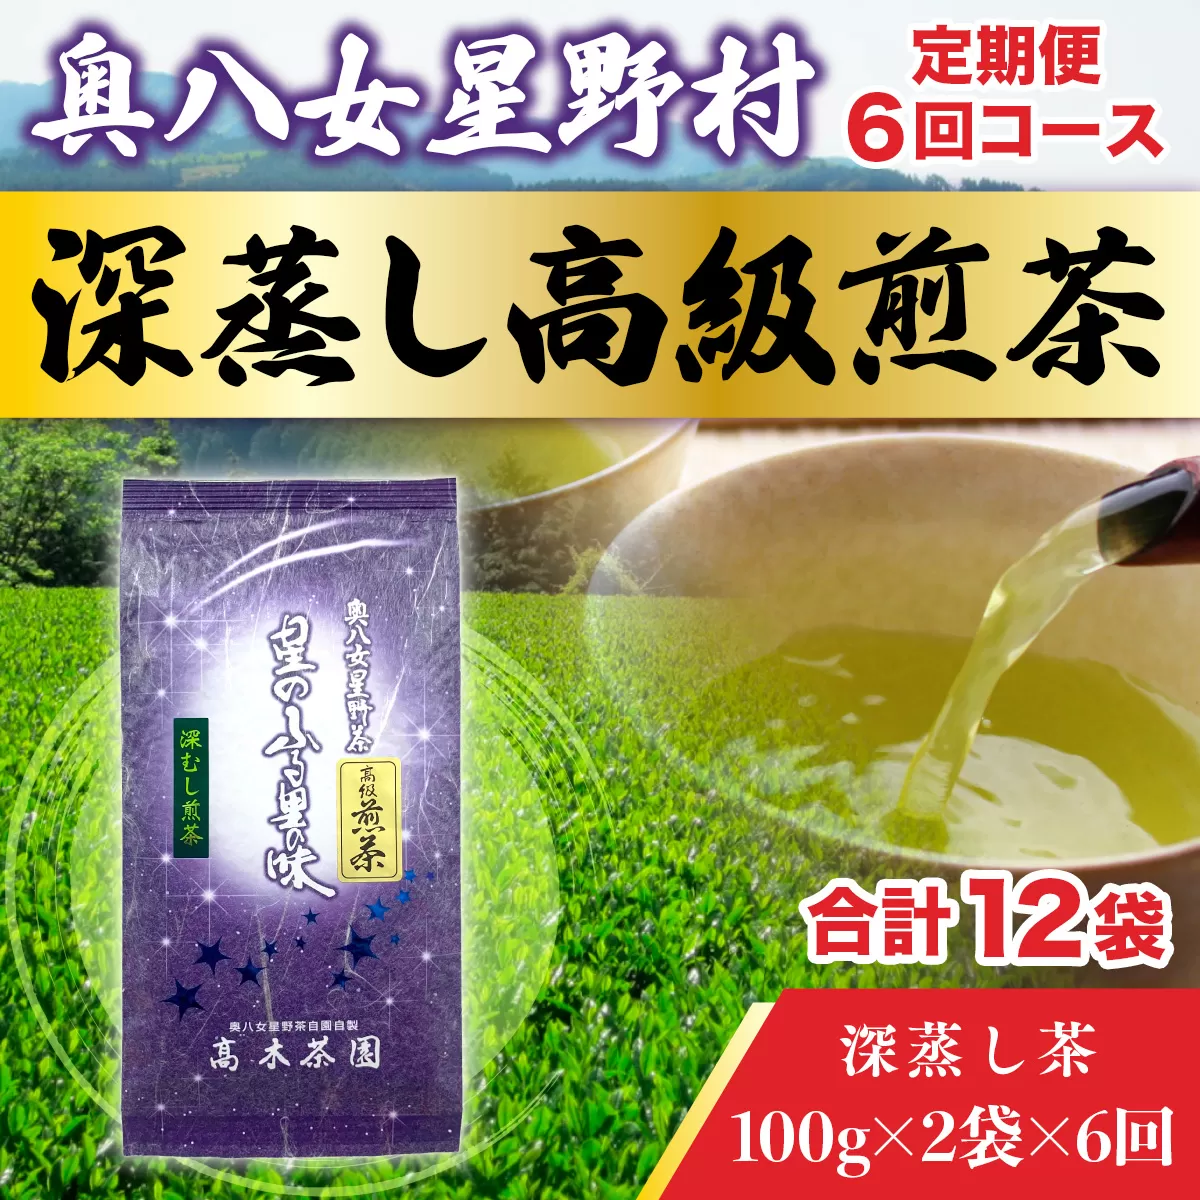 【定期便】奥八女星野村 深蒸し高級煎茶(深蒸し茶)1袋[200g] 6回コース UX019